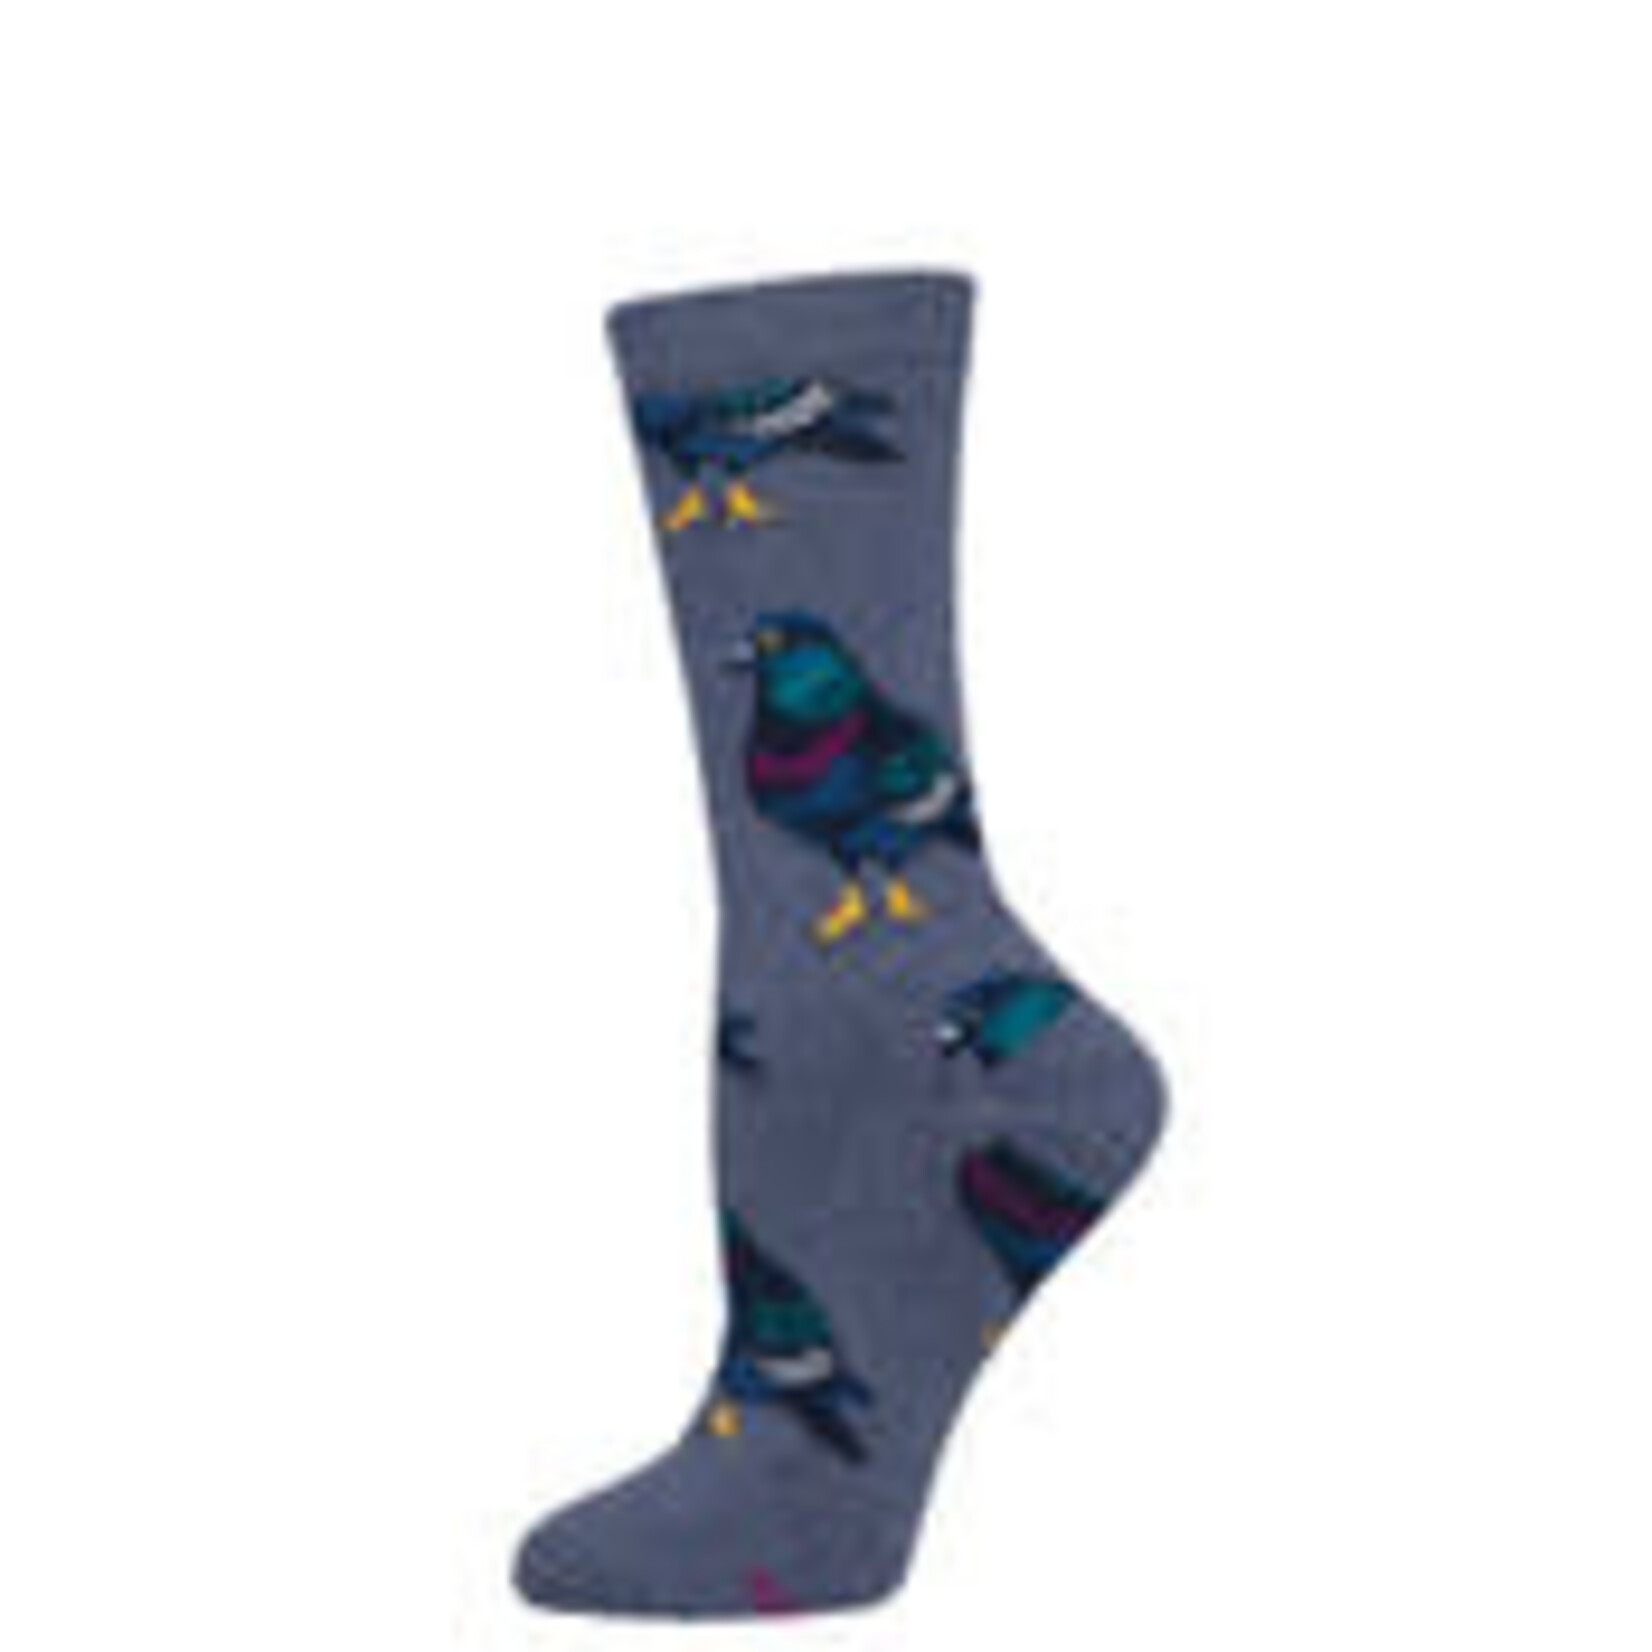 Socksmith Sly Pigeon Socks in S/M